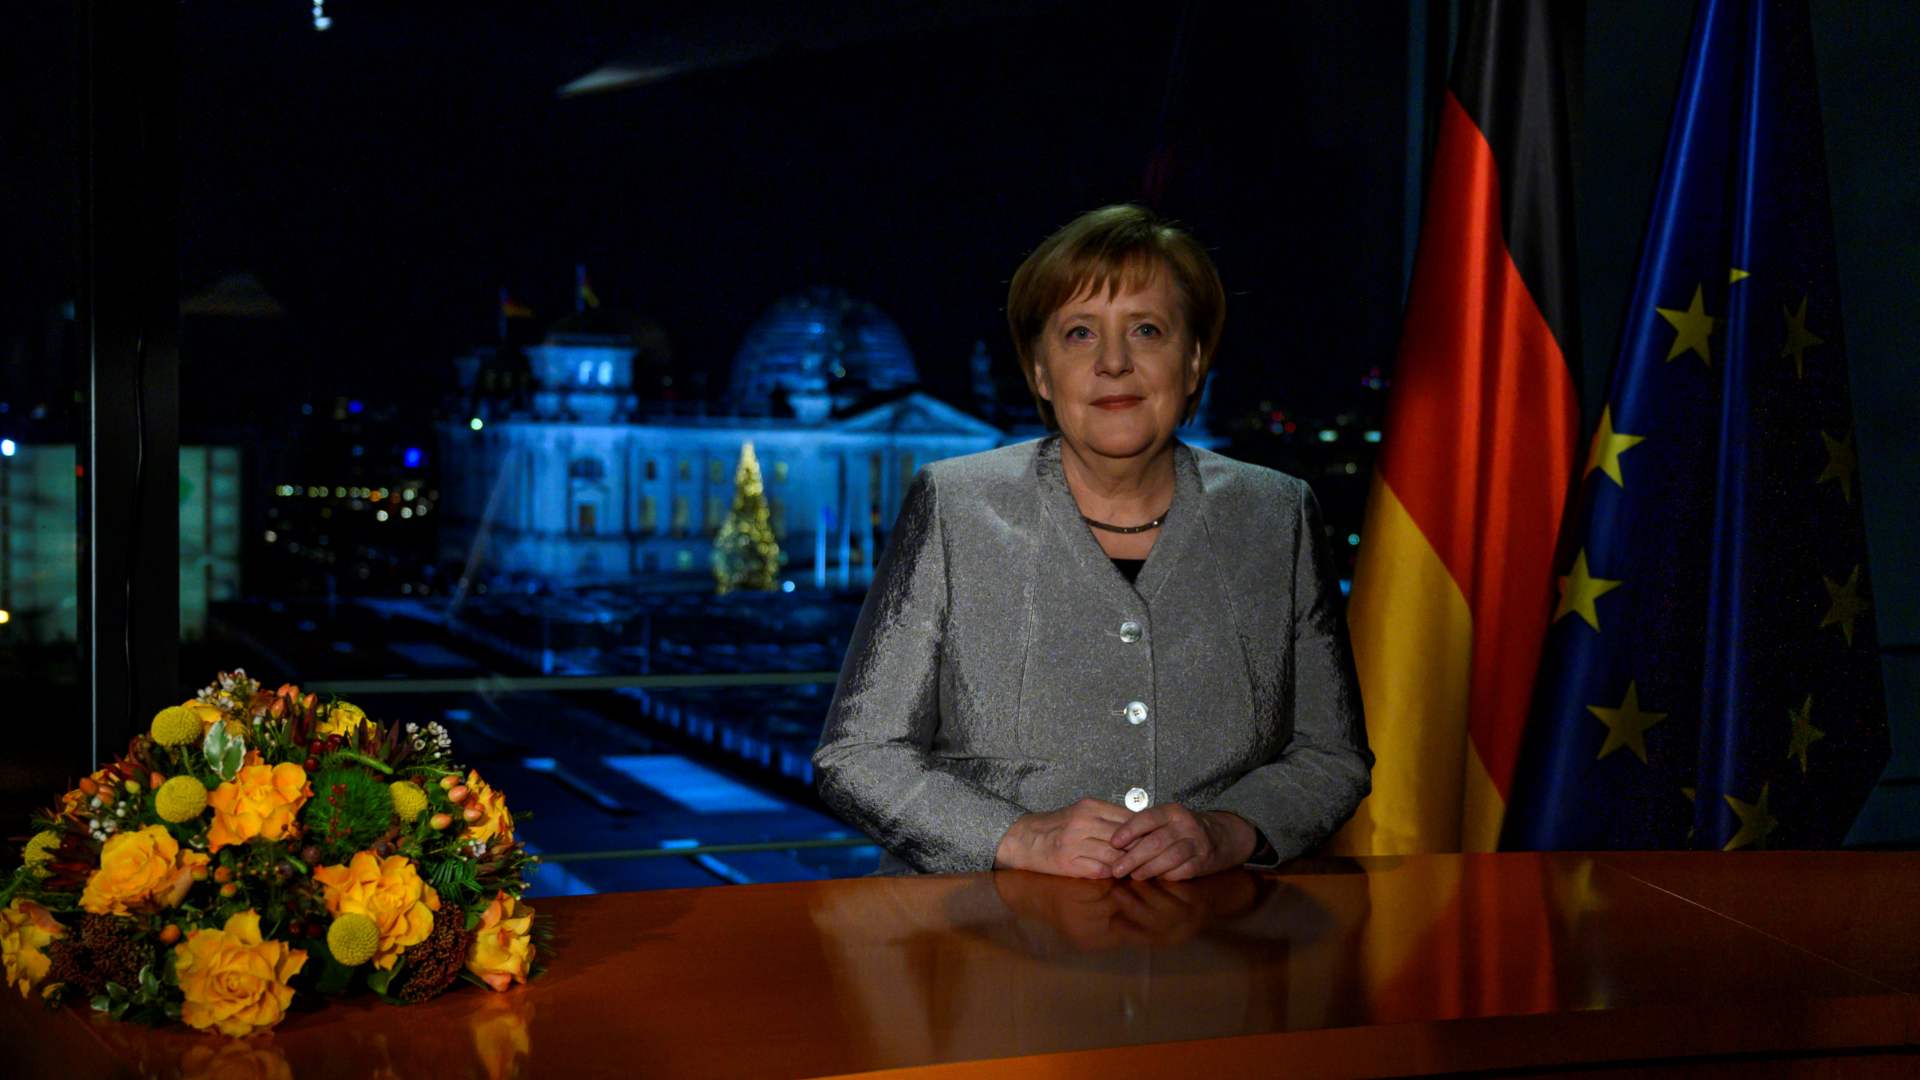 Merkel defiende una Alemania con "más responsabilidades" en el mundo en 2019